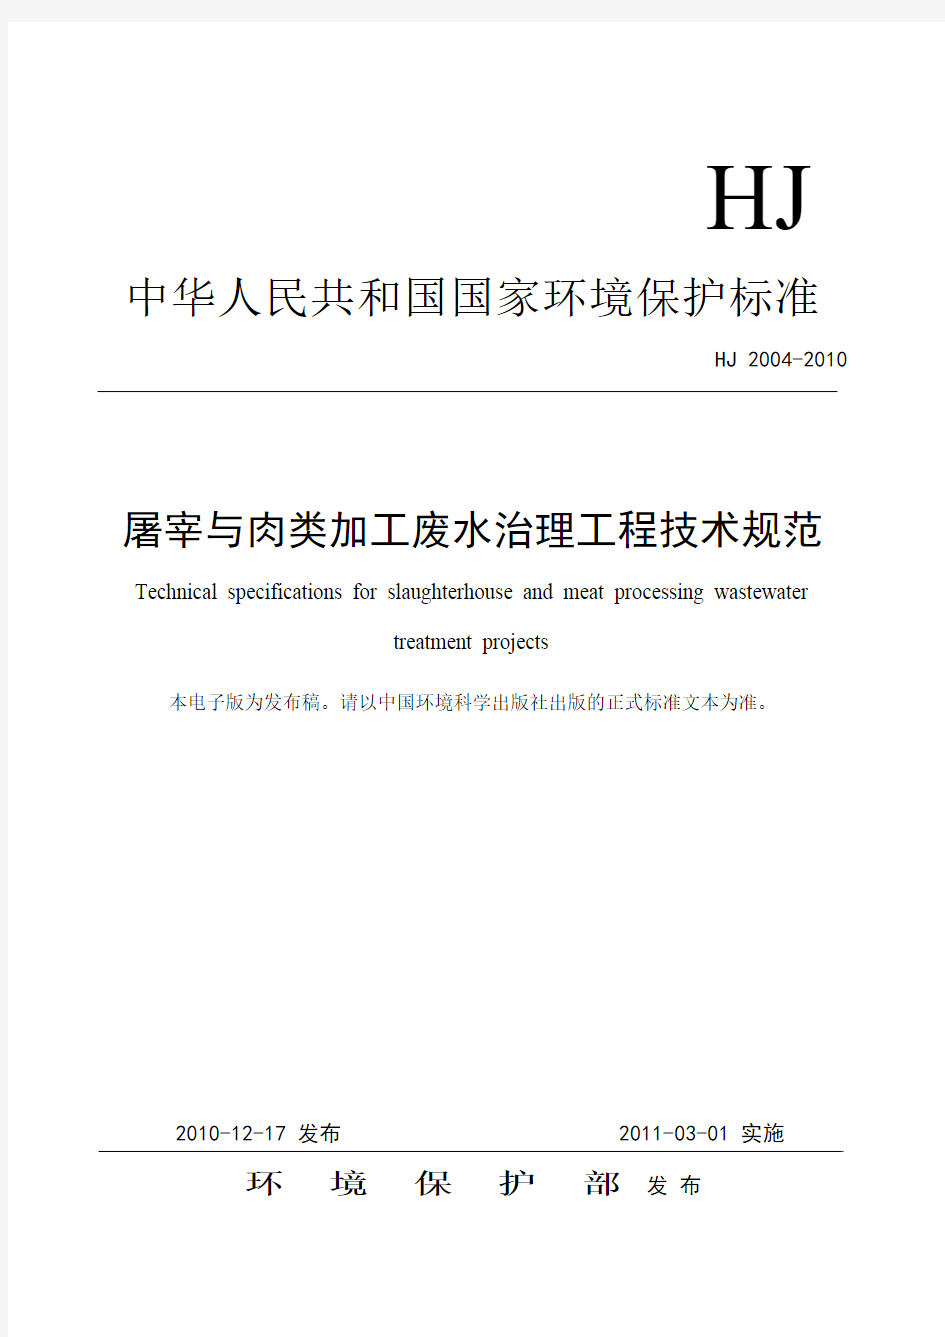 屠宰与肉类加工废水治理工程技术规范(HJ+2004-2010).pdf